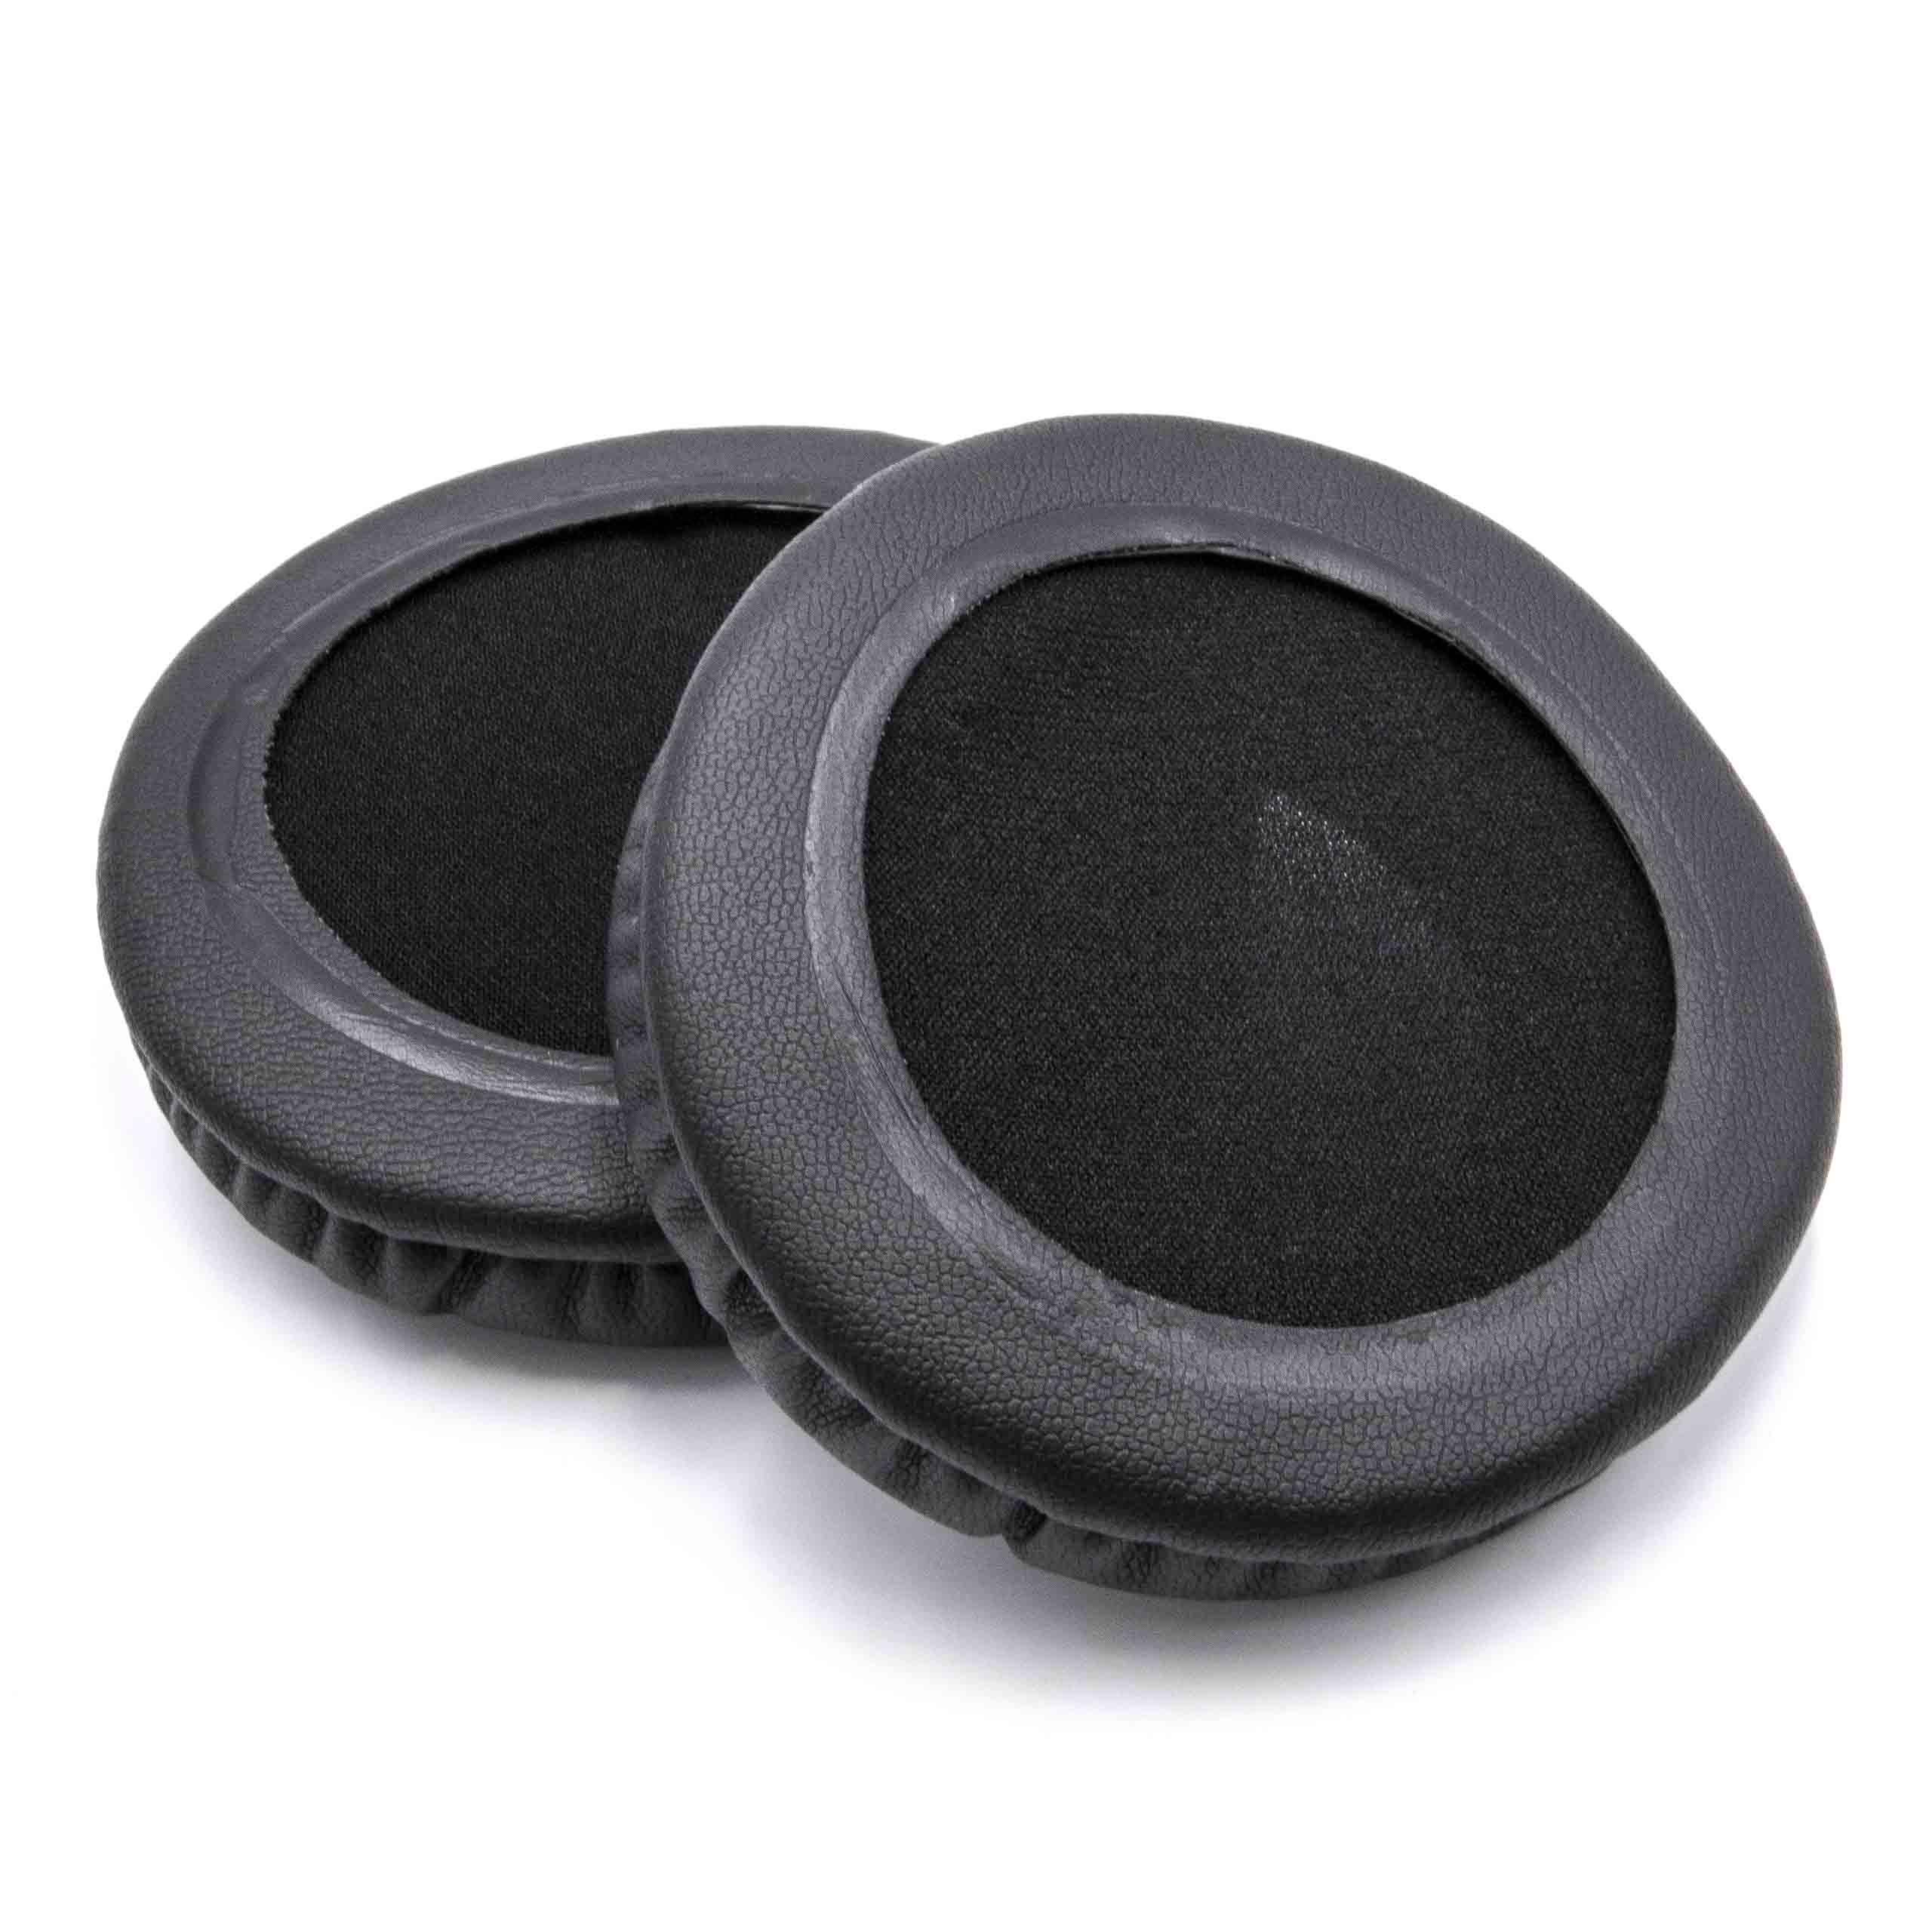 2x 1 paio di cuscinetti per cuffie con un cuscinetto auricolare da 80 mm / Audio Technica / Sony ATH-WS70 cuff